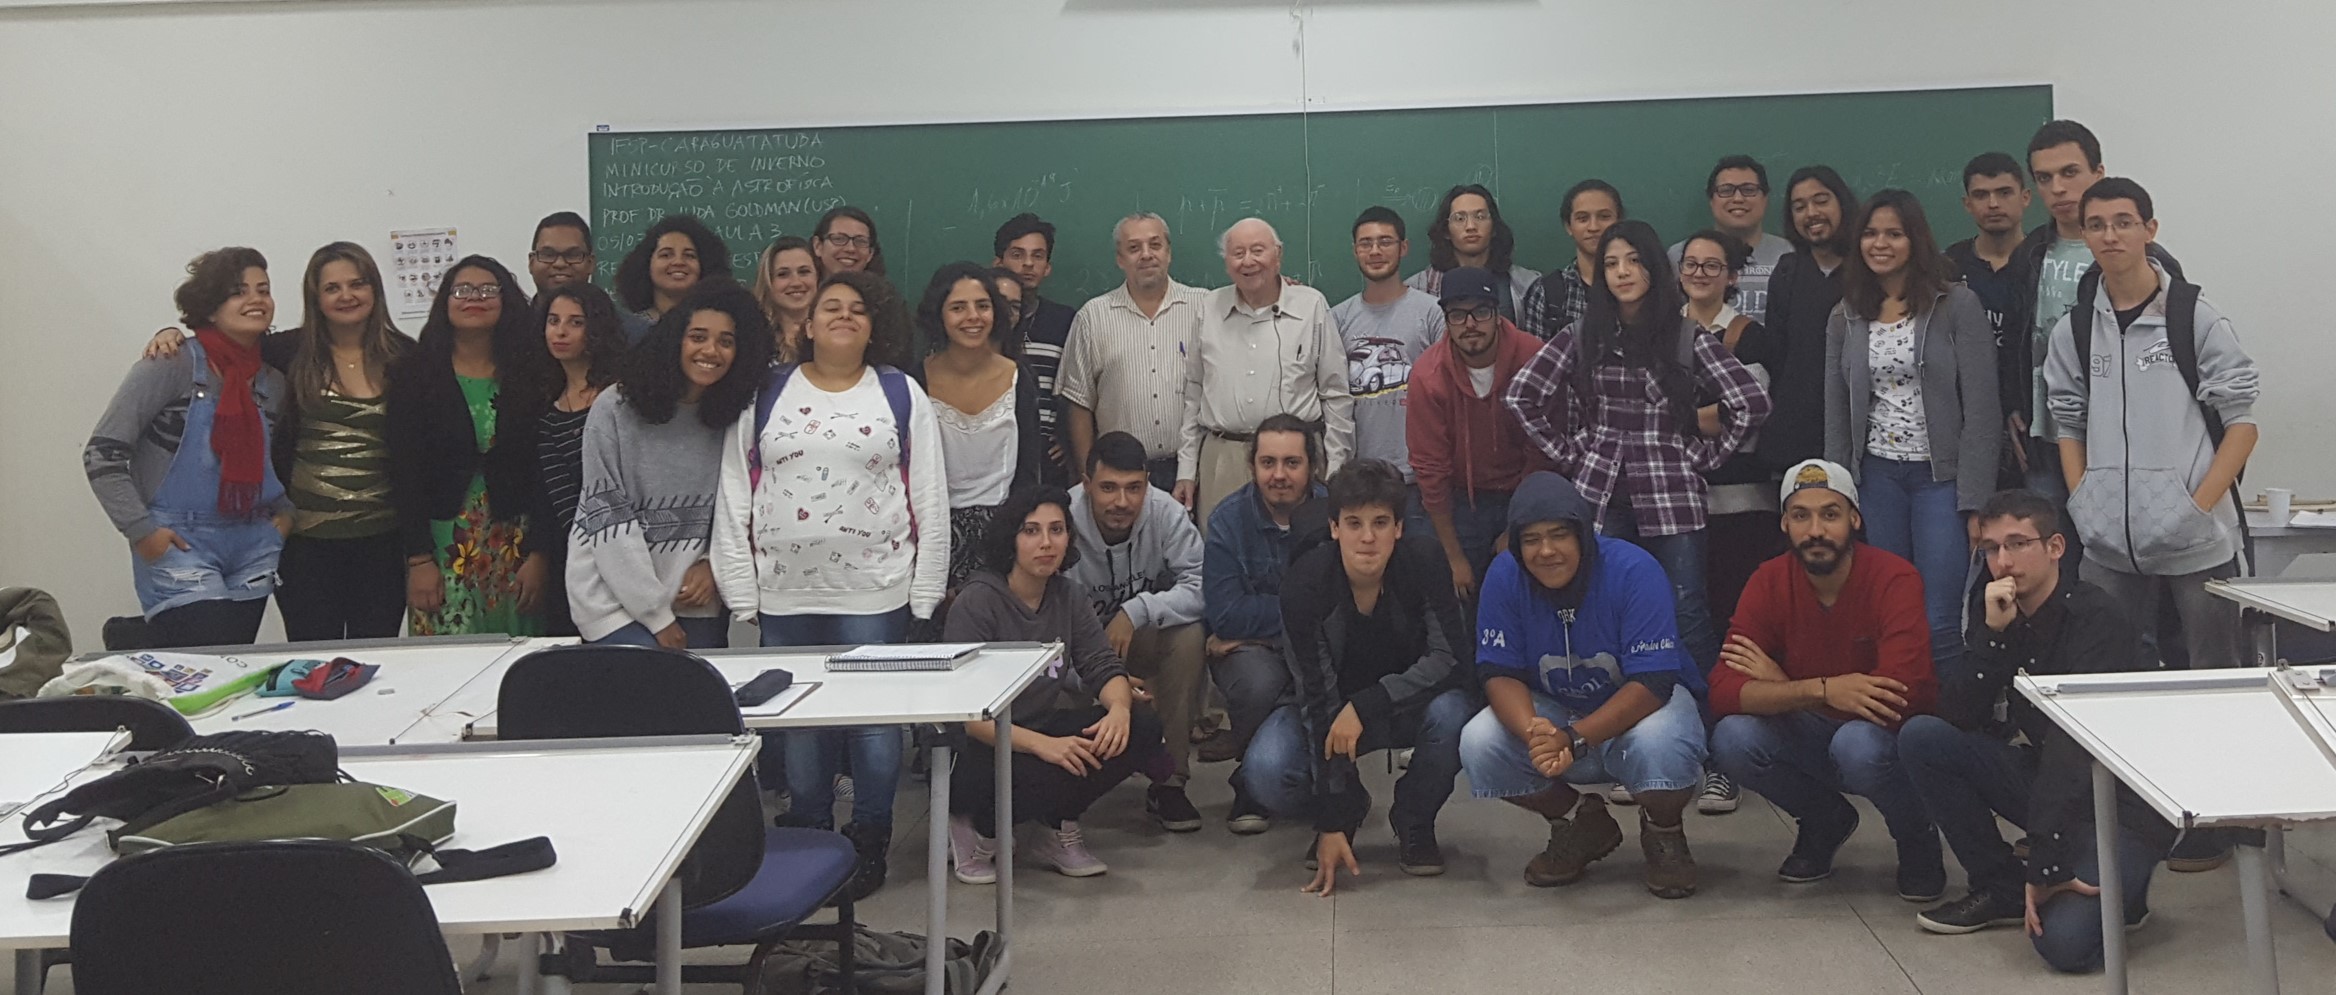 Imagem 2 – Professor Iuda com estudantes no IFSP-Caraguatatuba em julho de 2017